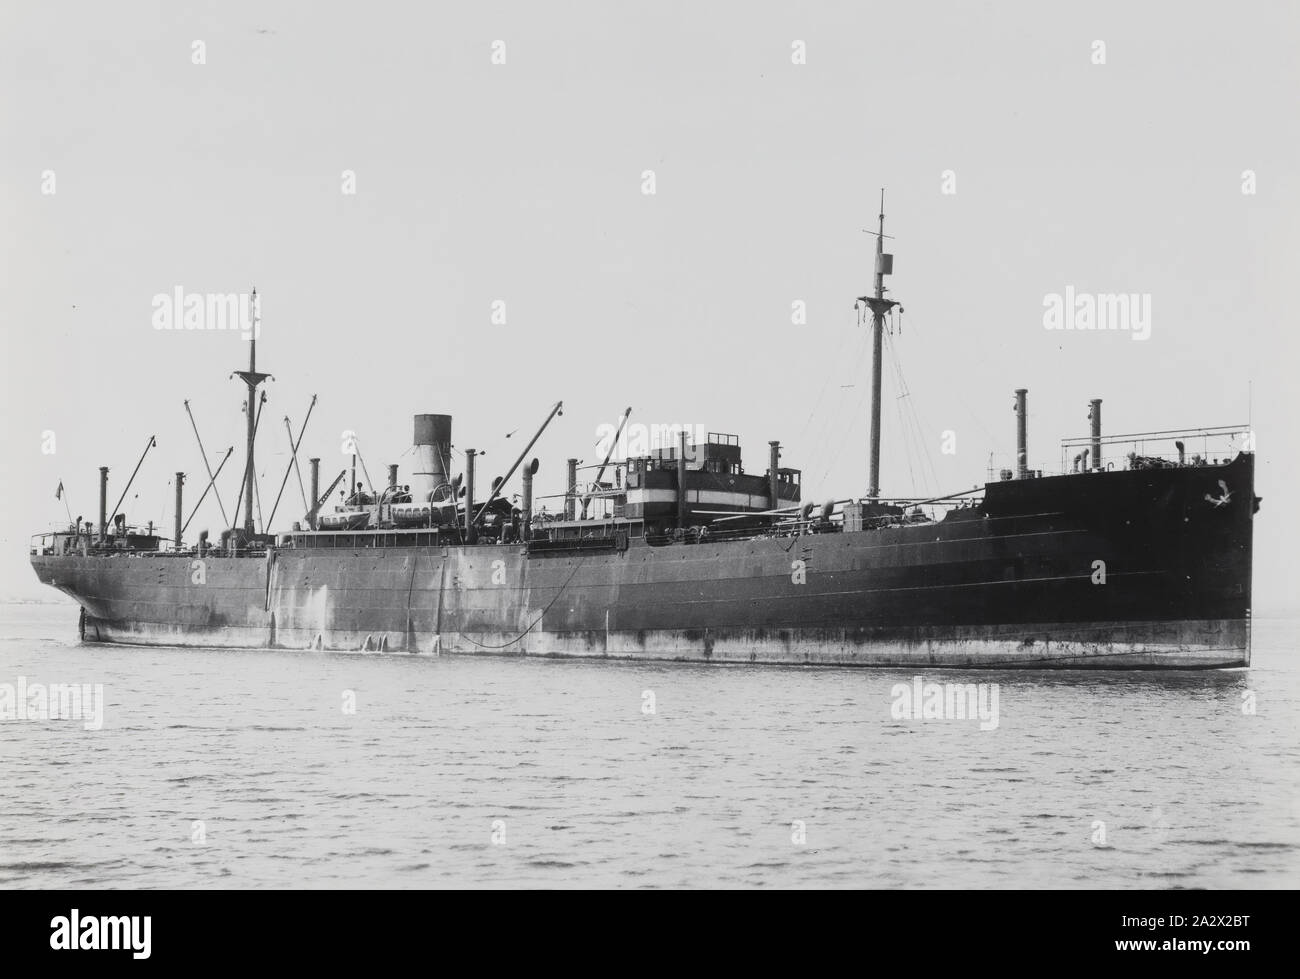 Fotografie - Cargo Dampf schiff, Australien, 1920-1939, schwarz-weiß Bild von einer Ladung schraube Dampf schiff. Es ist eine Sammlung von 15 schwarz-weiß Fotografien Passagier- und Frachtschiffe in australischen Gewässern in den 1920er und 1930er Jahre Stockfoto